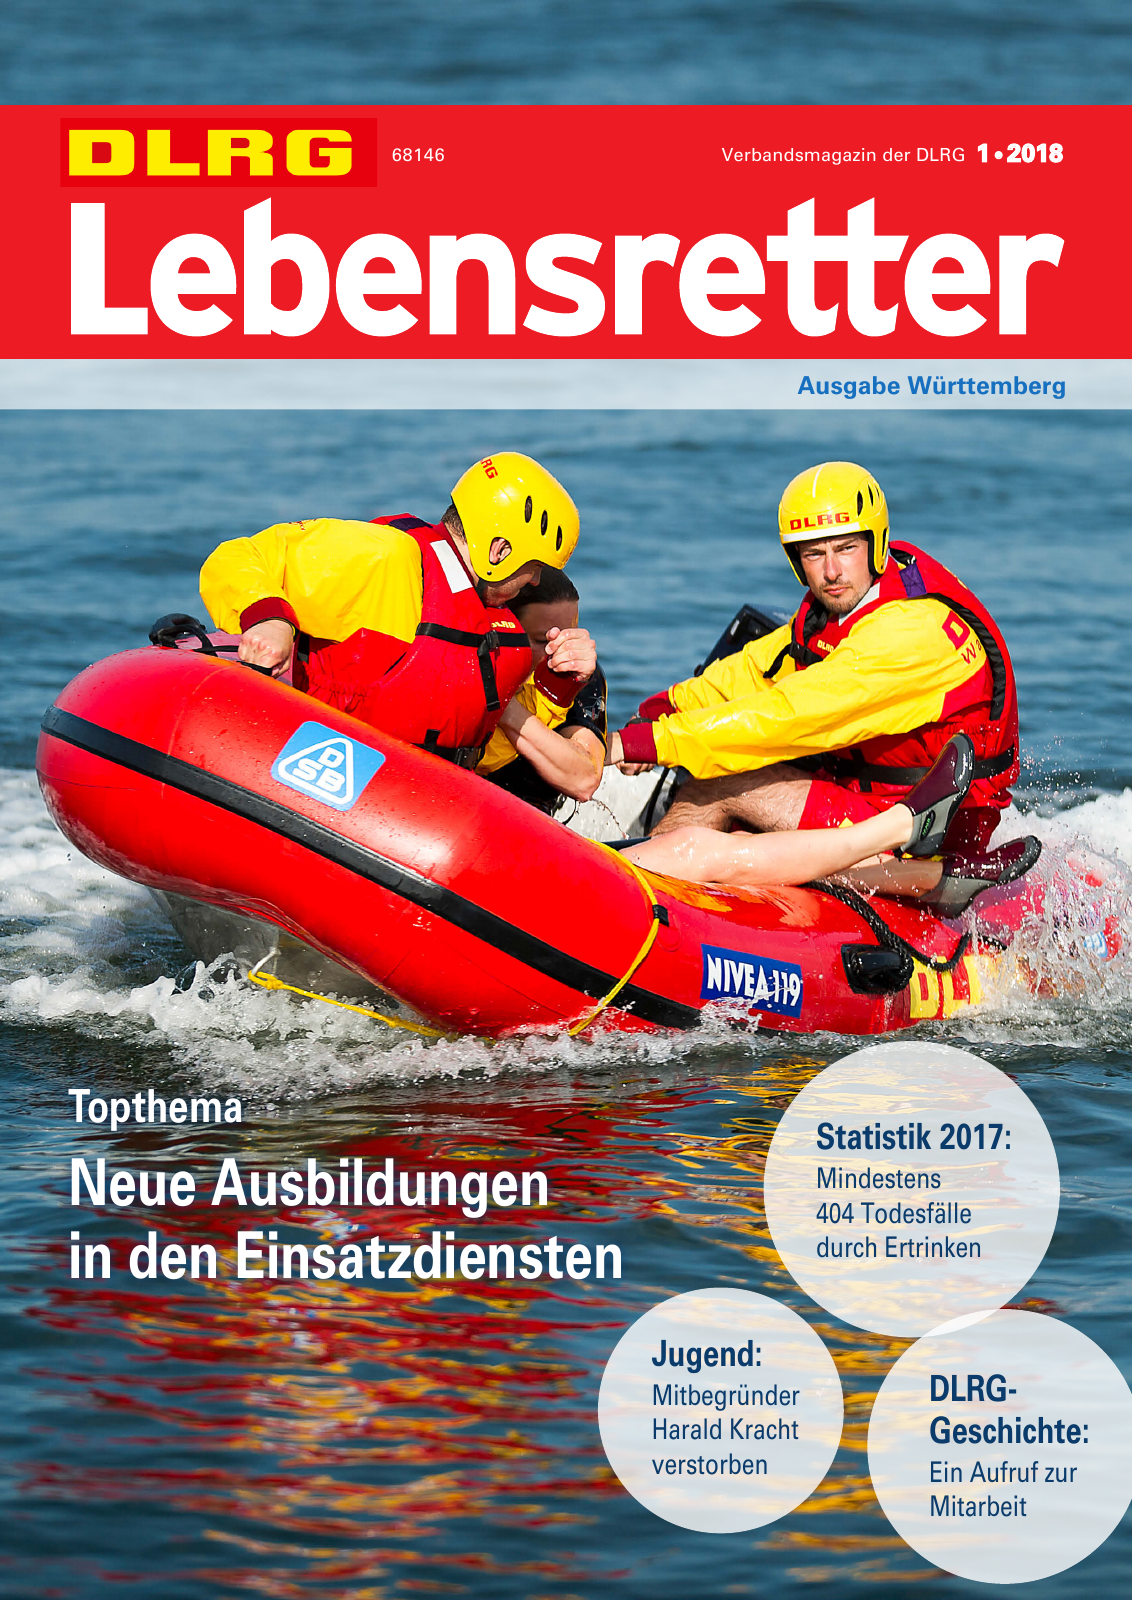 Vorschau Lebensretter 1/2018 - Regionalausgabe Württemberg Seite 1